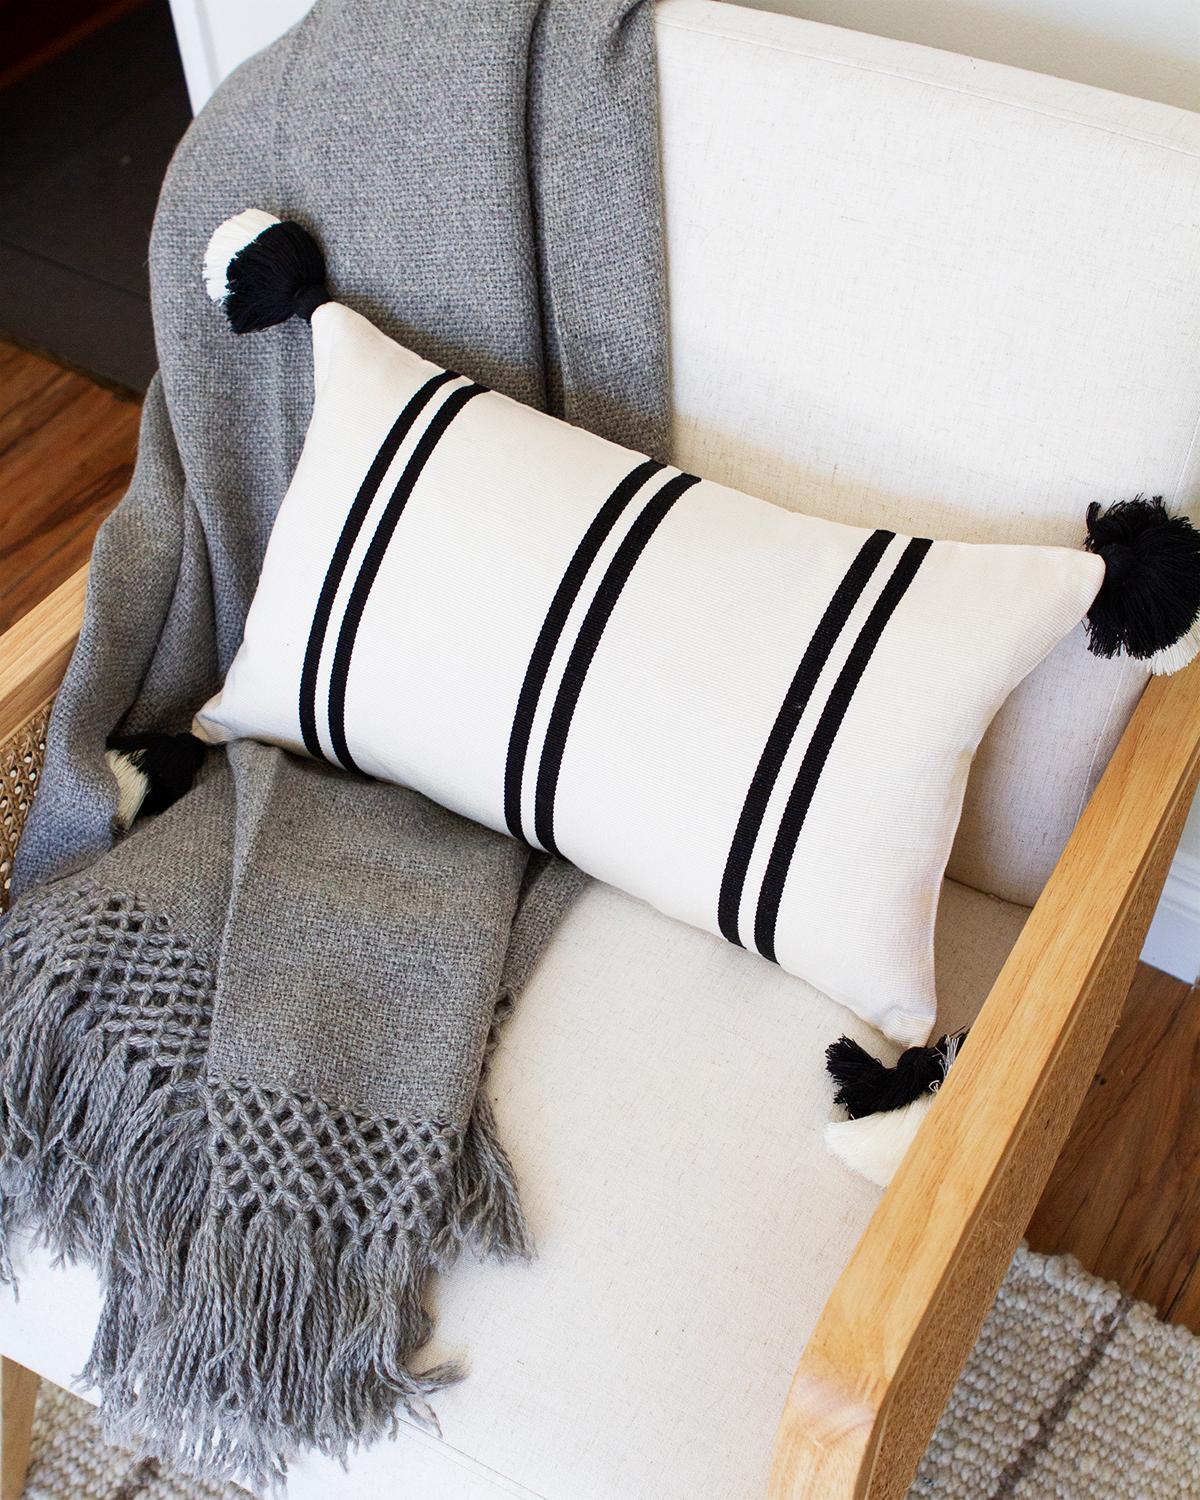 Handwerklich hergestellte Kissen aus 100% Pima-Baumwolle

Dieses schwarz-weiße Lendenkissen wurde in Peru aus 100% Pima-Baumwolle handgewebt. Das richtige Kissen für die Couch in Ihrem Wohnzimmer oder das Bett in Ihrem Schlafzimmer zu finden, kann